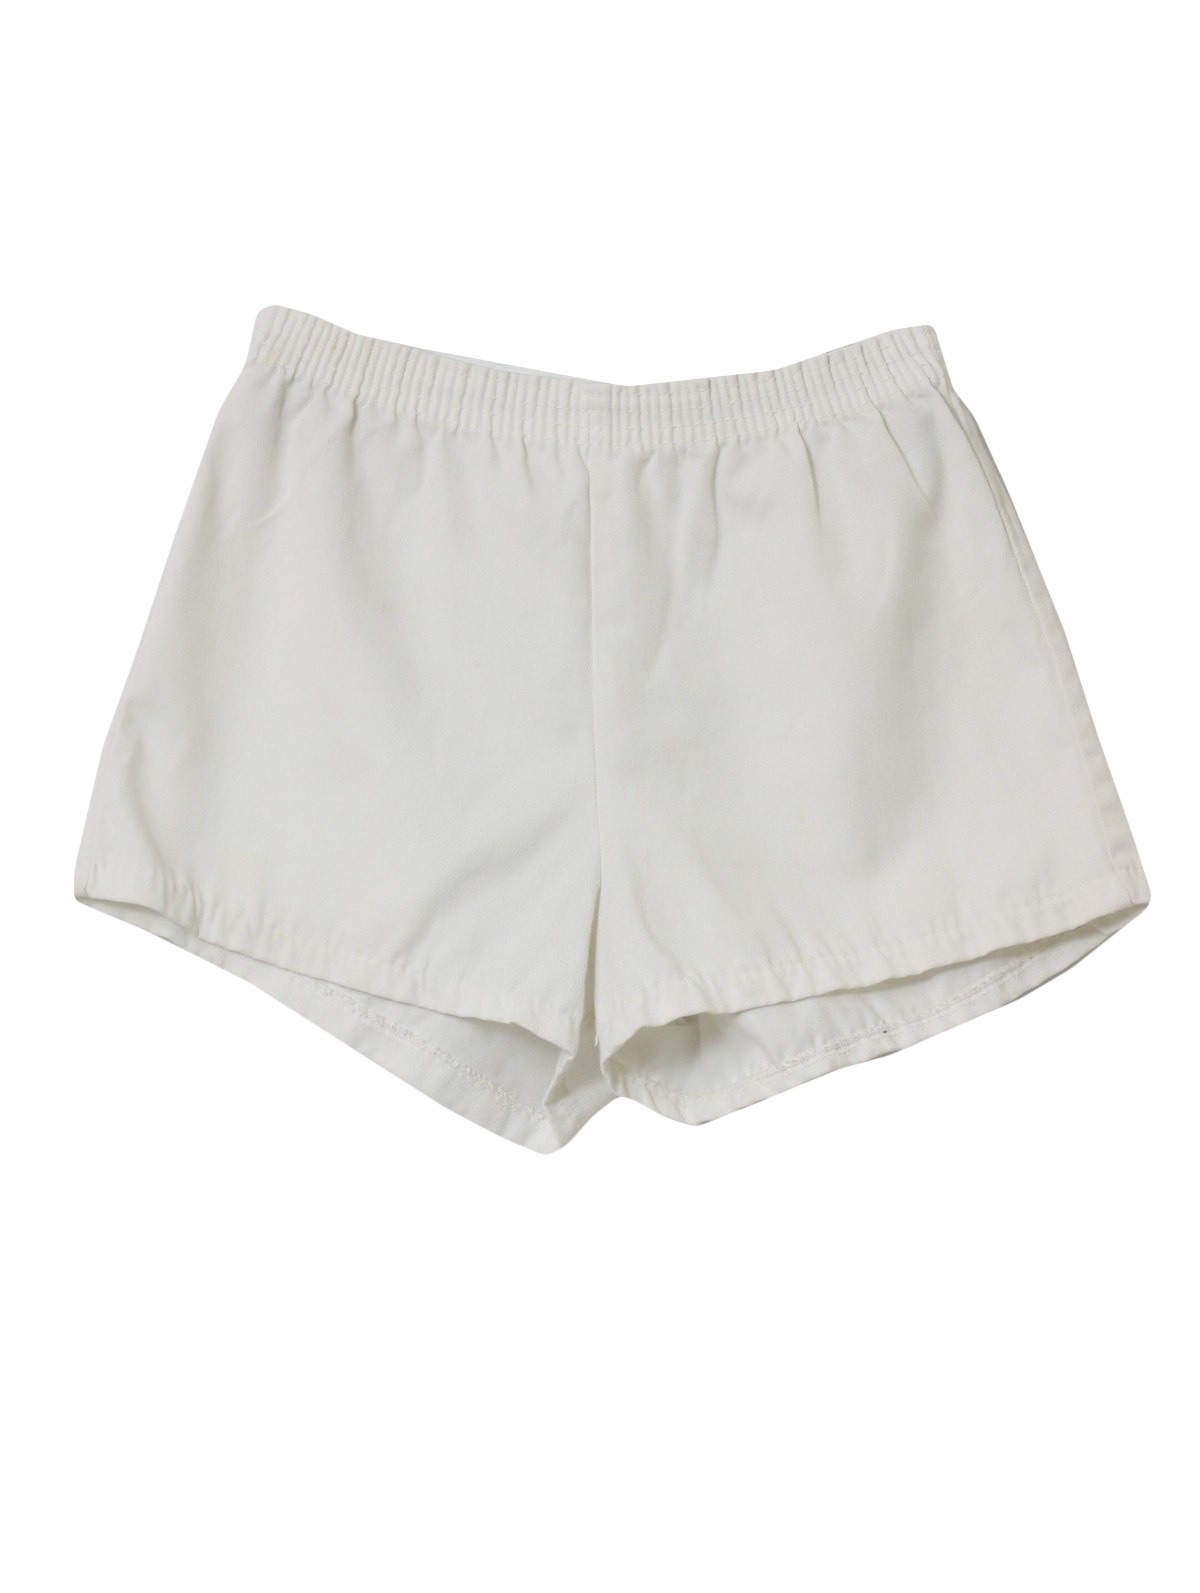 1970's Retro Shorts: 70s -Hemco- Mens white background cotton blend ...